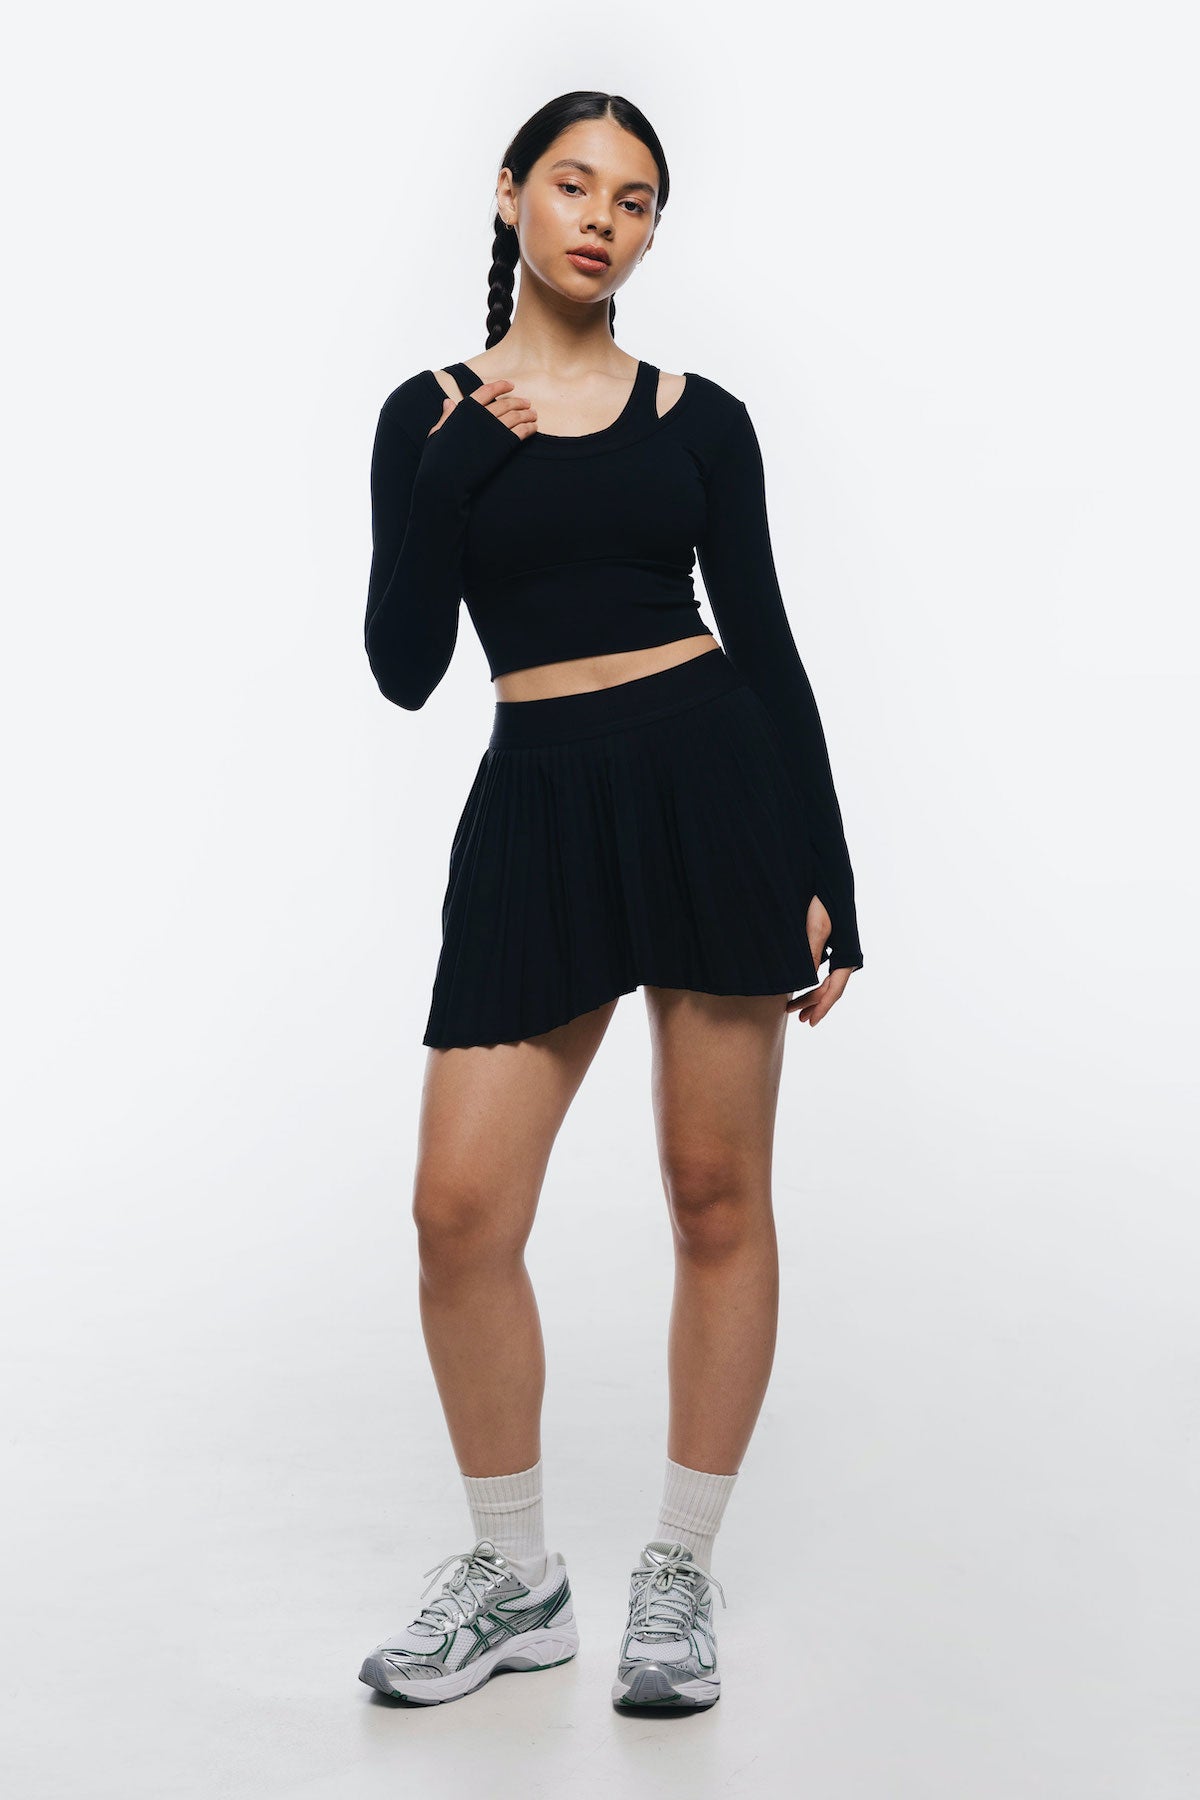 Jade Tennis Skirt in Black